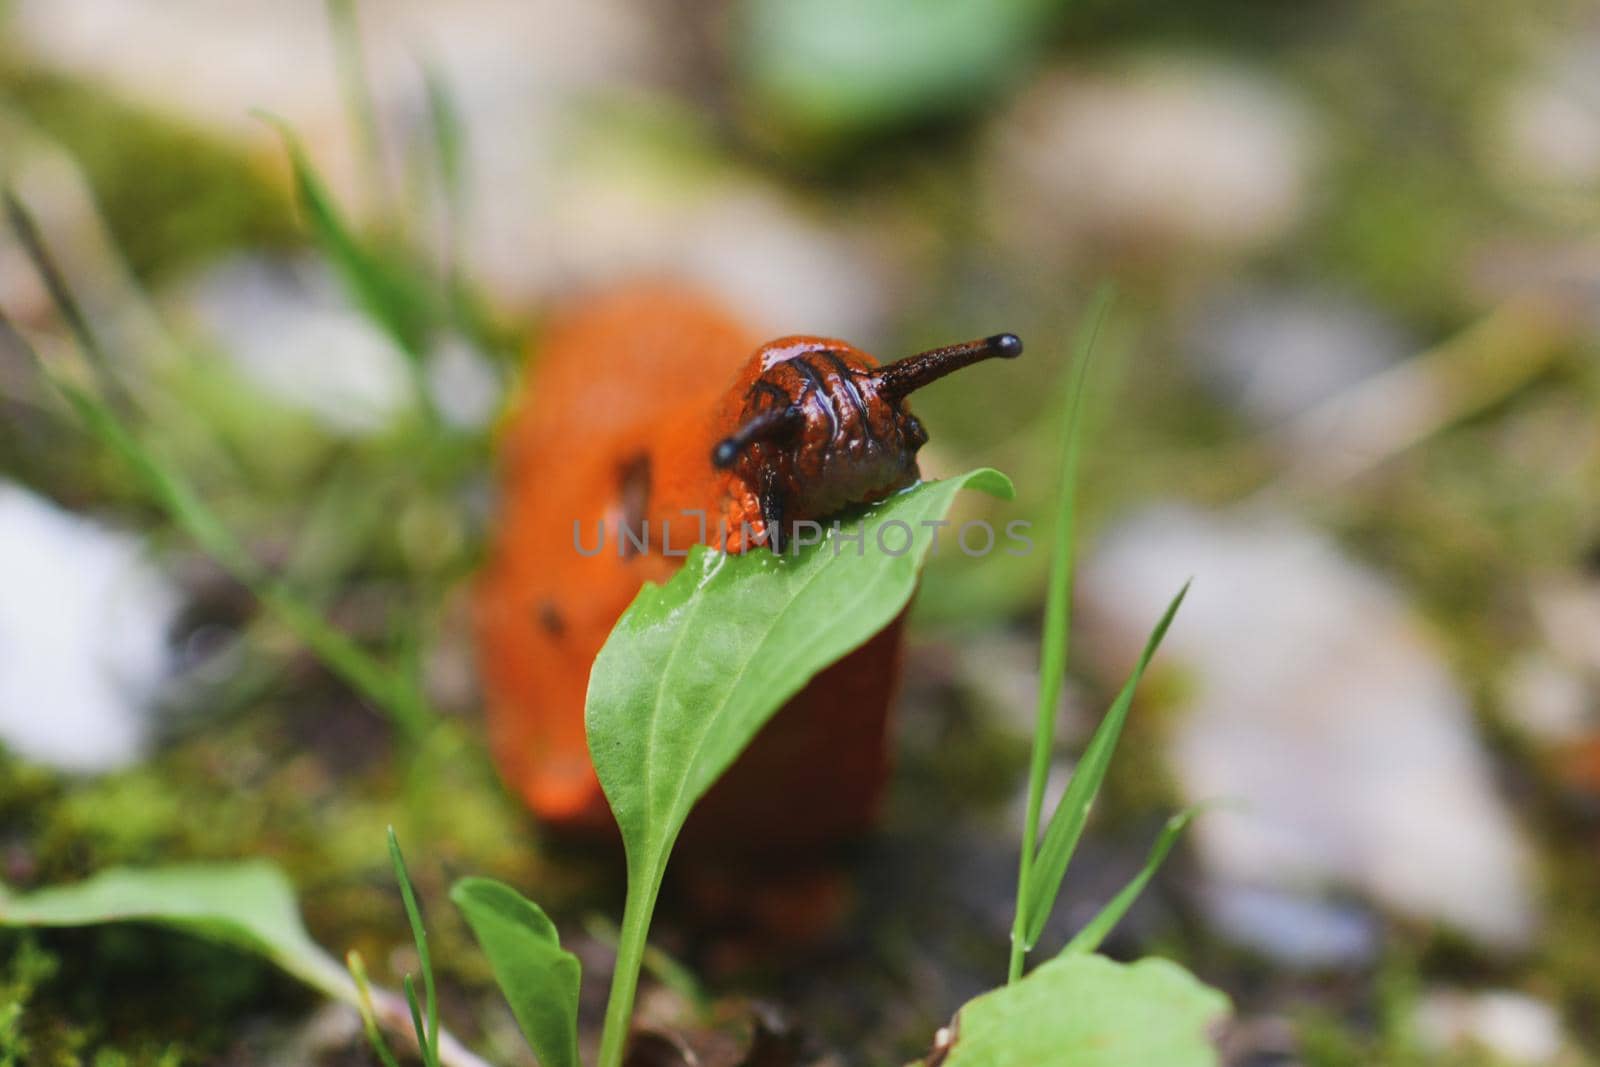 An Orange slug eating a leaf